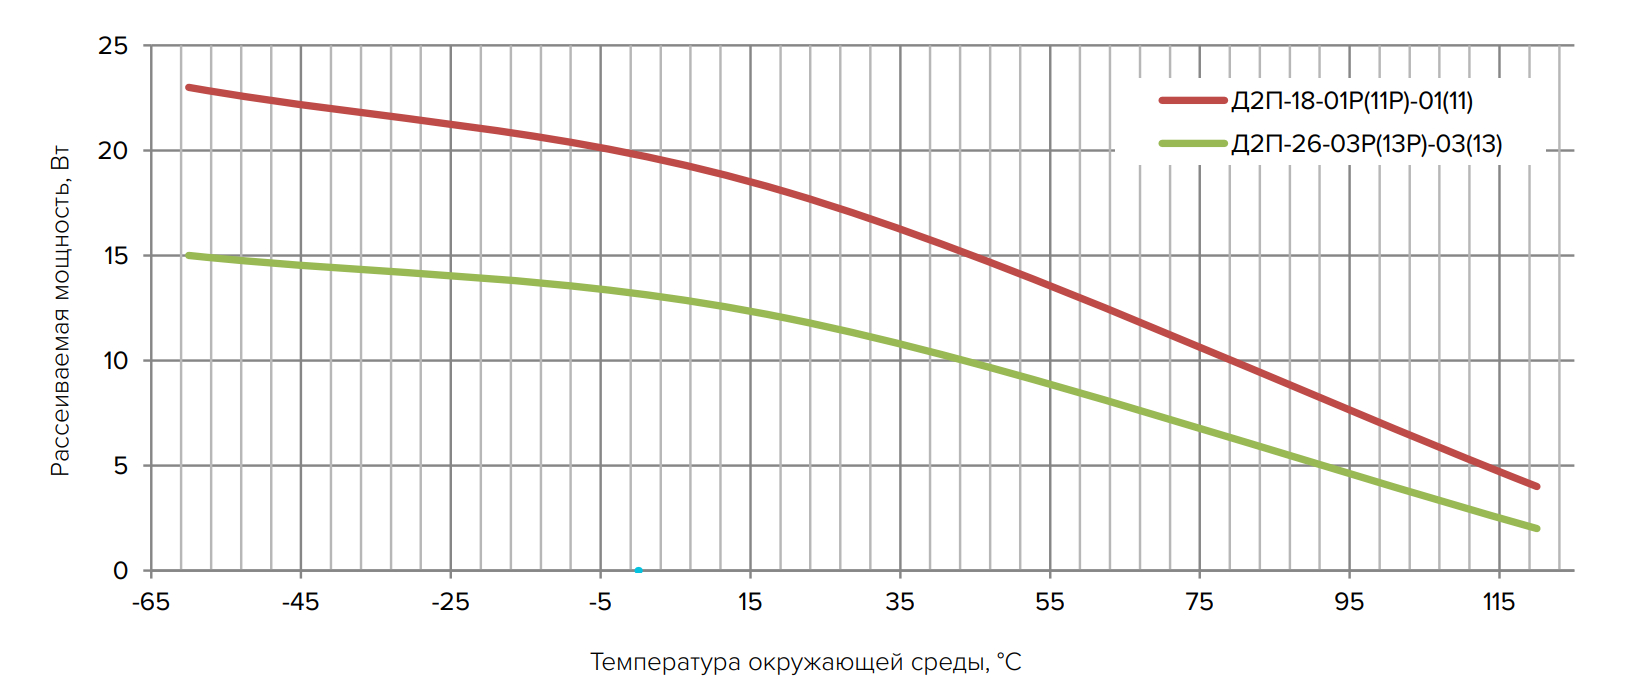 Максимальный уровень рассеиваемой мощности  для моделей Д2П-18-01Р(11Р)-01(11) и Д2П-26-03Р(13Р)-03(13)